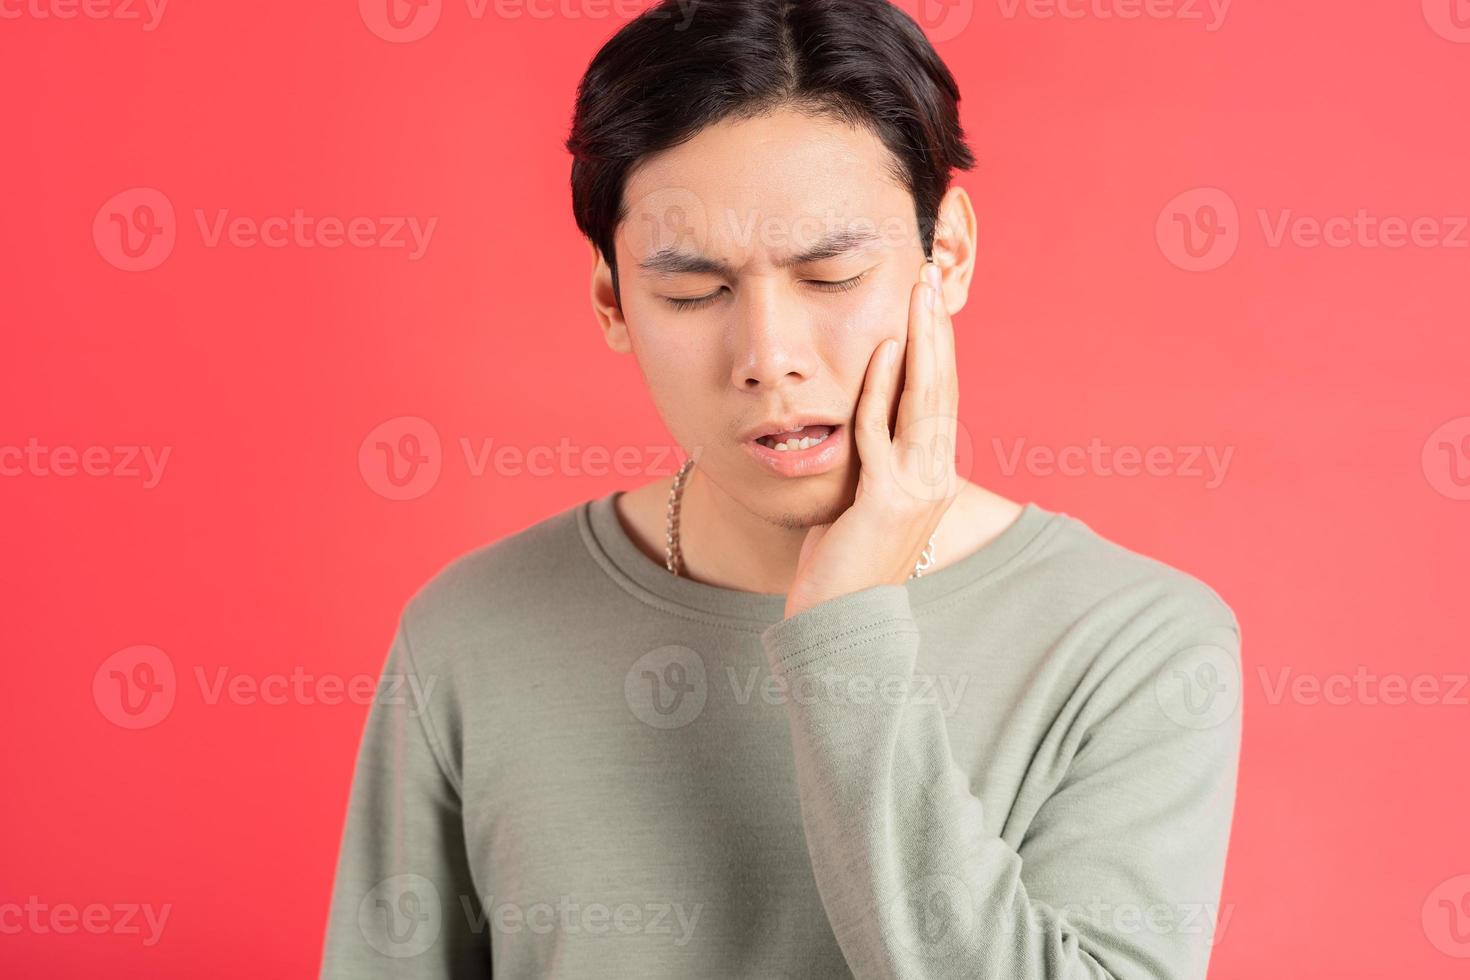 ett foto av en stilig asiatisk man som lider av tandförfall